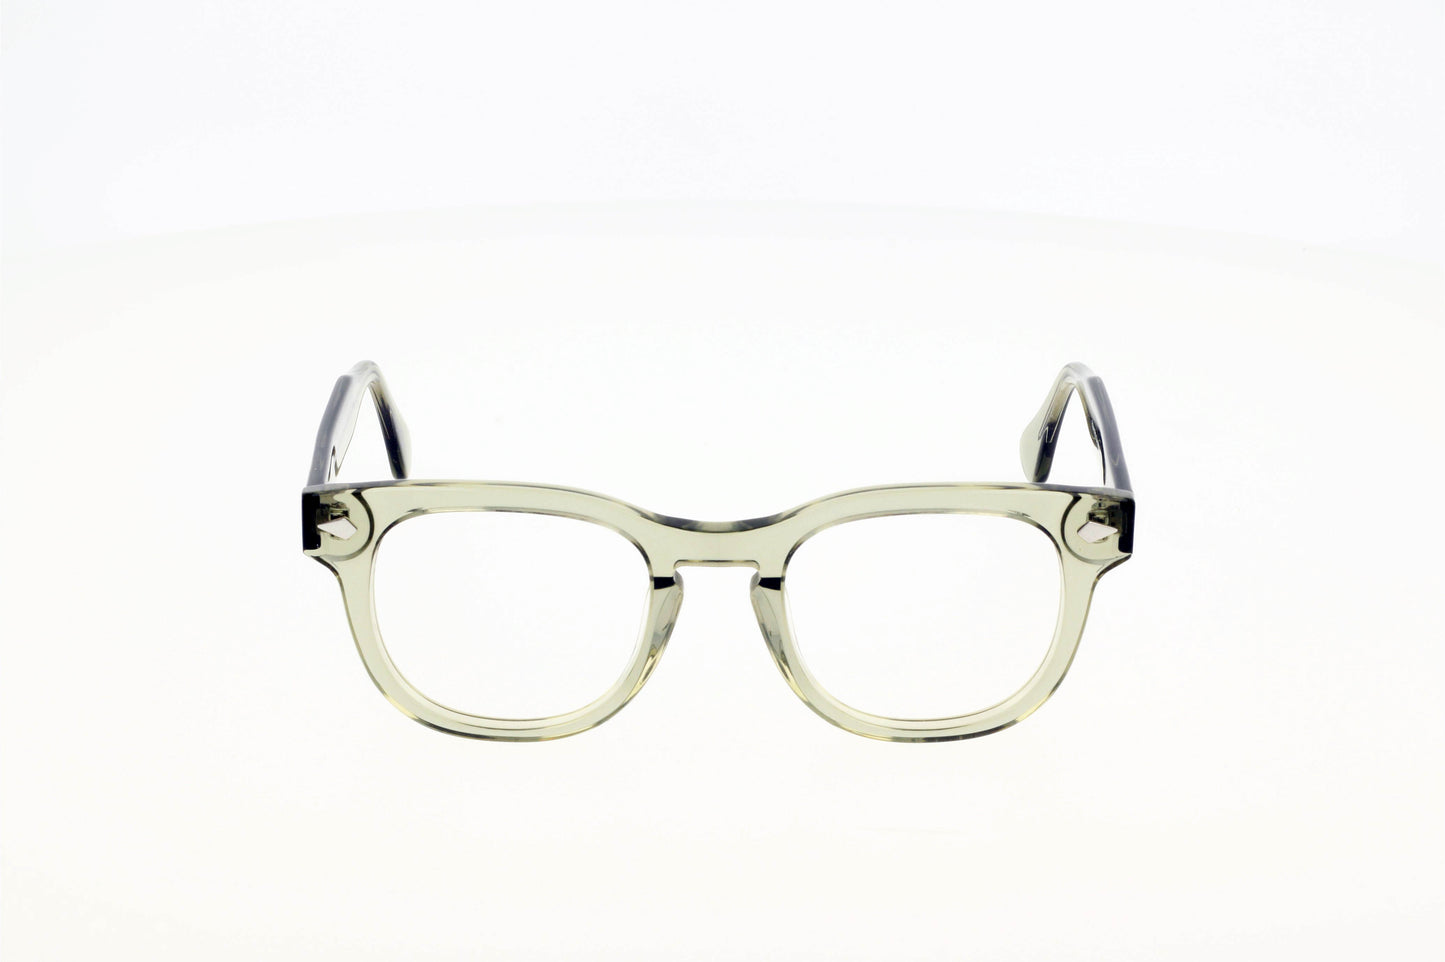 Originel eyewear France vous propose une lunette en acétate épais de couleur noire ou translucide verte. Elle est moderne, actuelle et tendance.